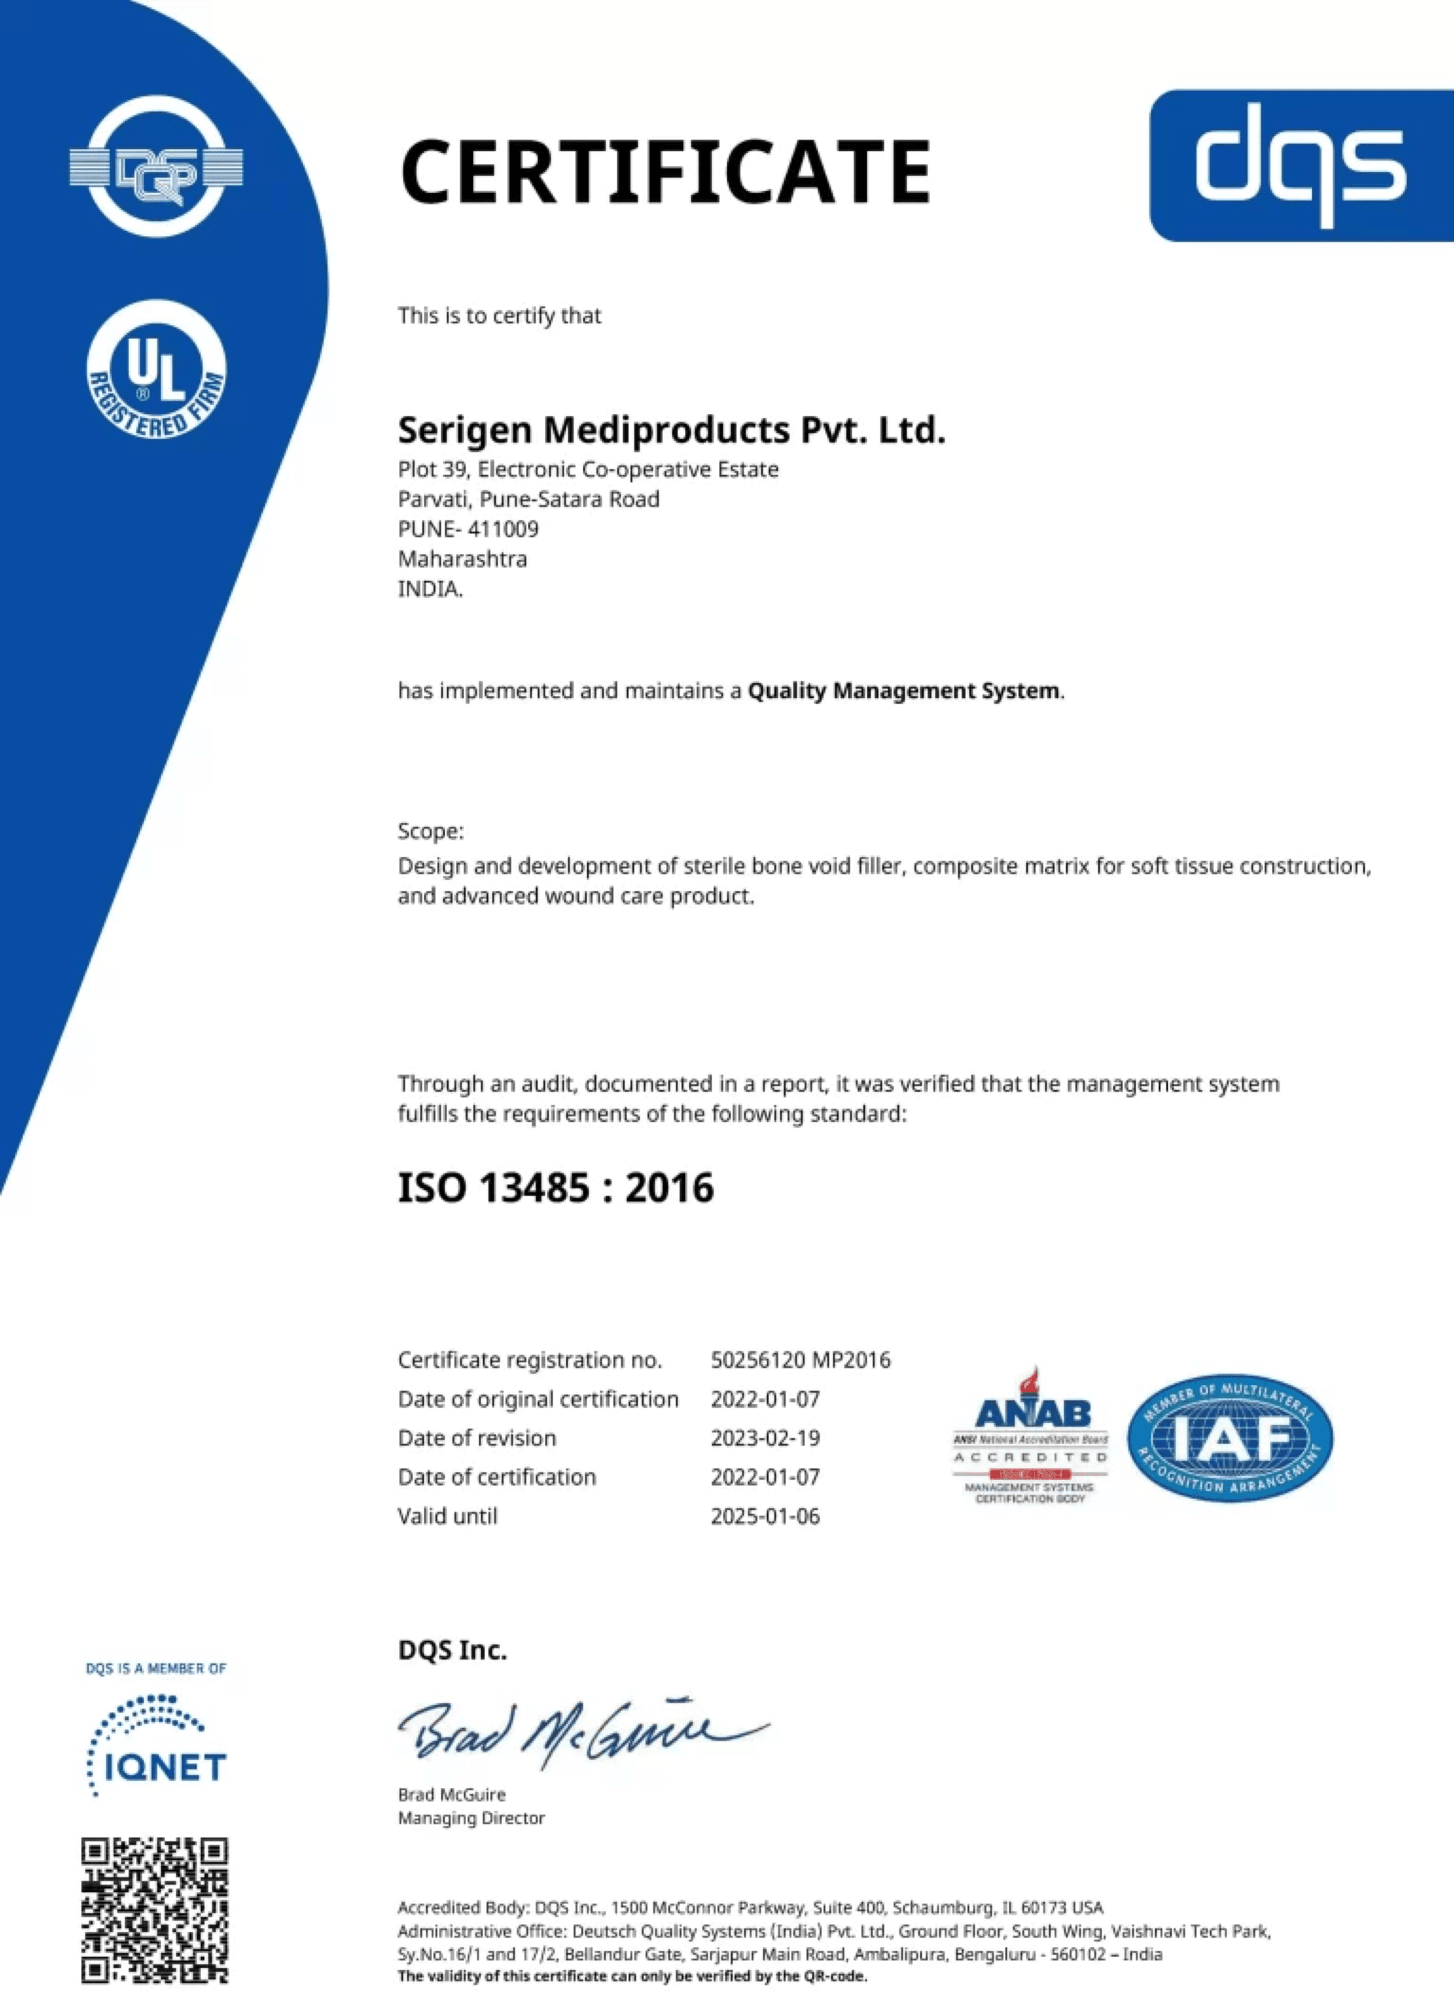 Serigen ISO 13485 certificate